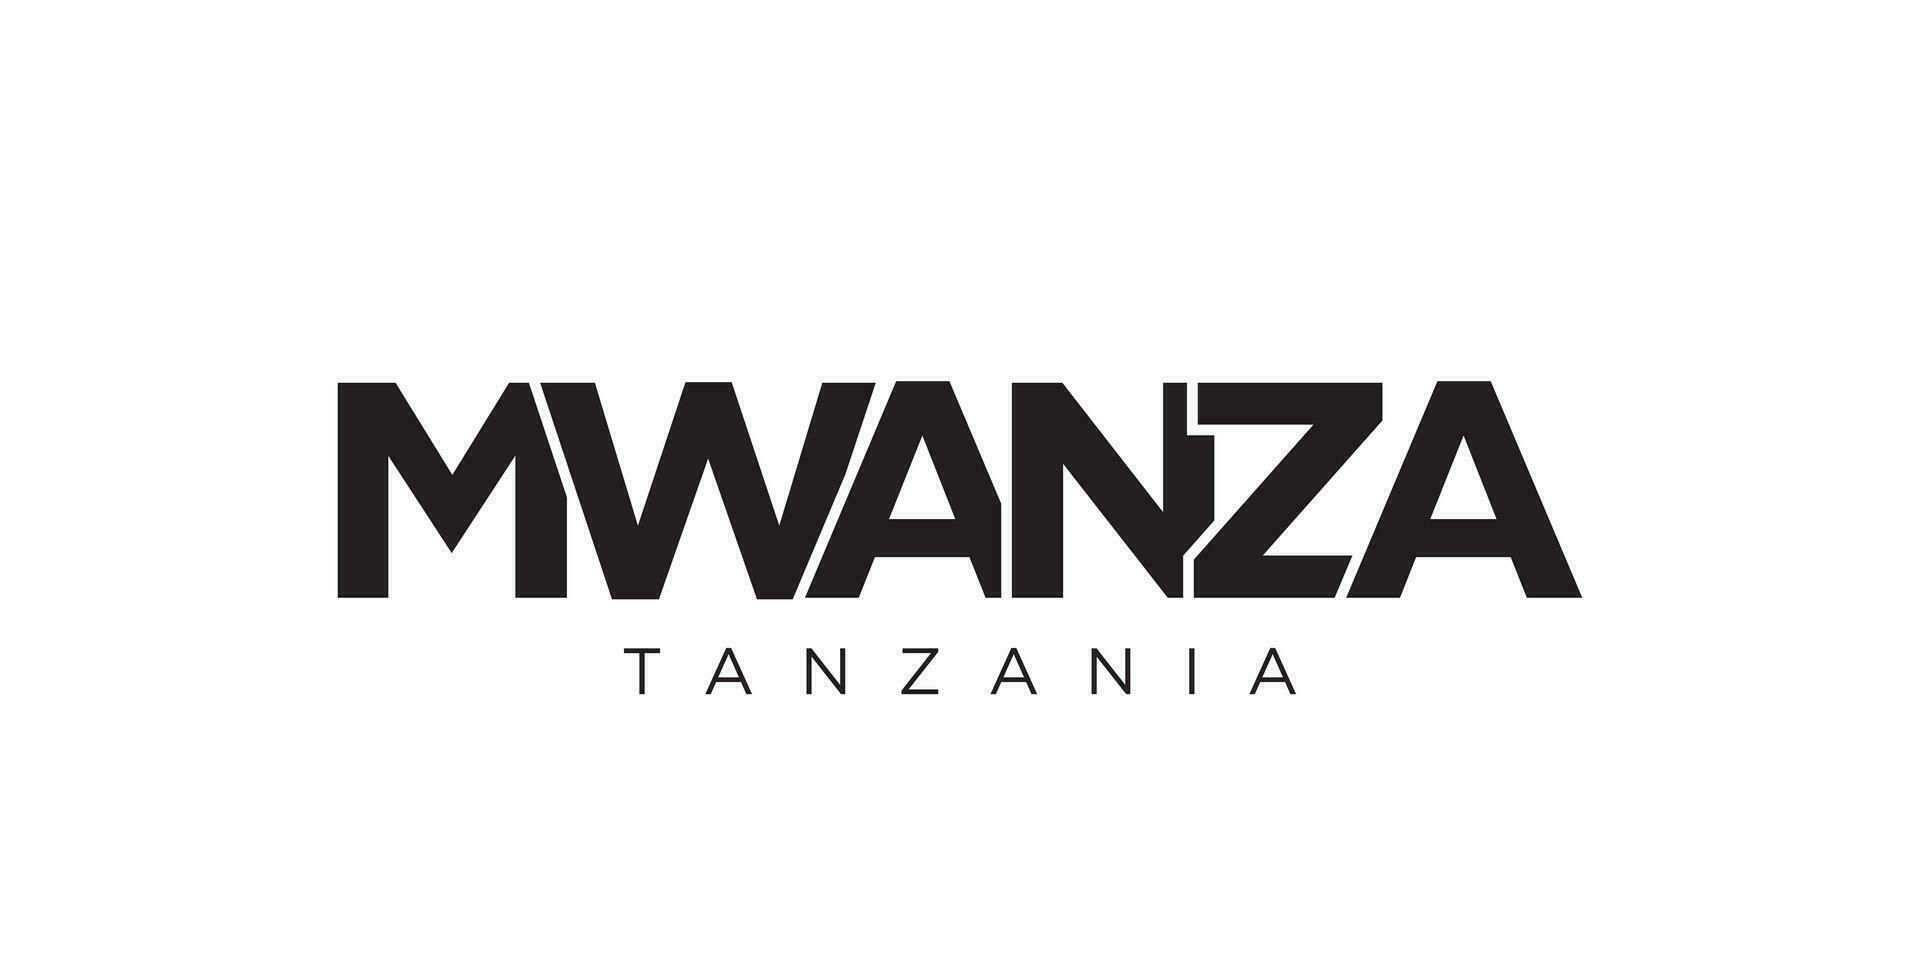 mwanza dans le Tanzanie emblème. le conception Caractéristiques une géométrique style, vecteur illustration avec audacieux typographie dans une moderne Police de caractère. le graphique slogan caractères.